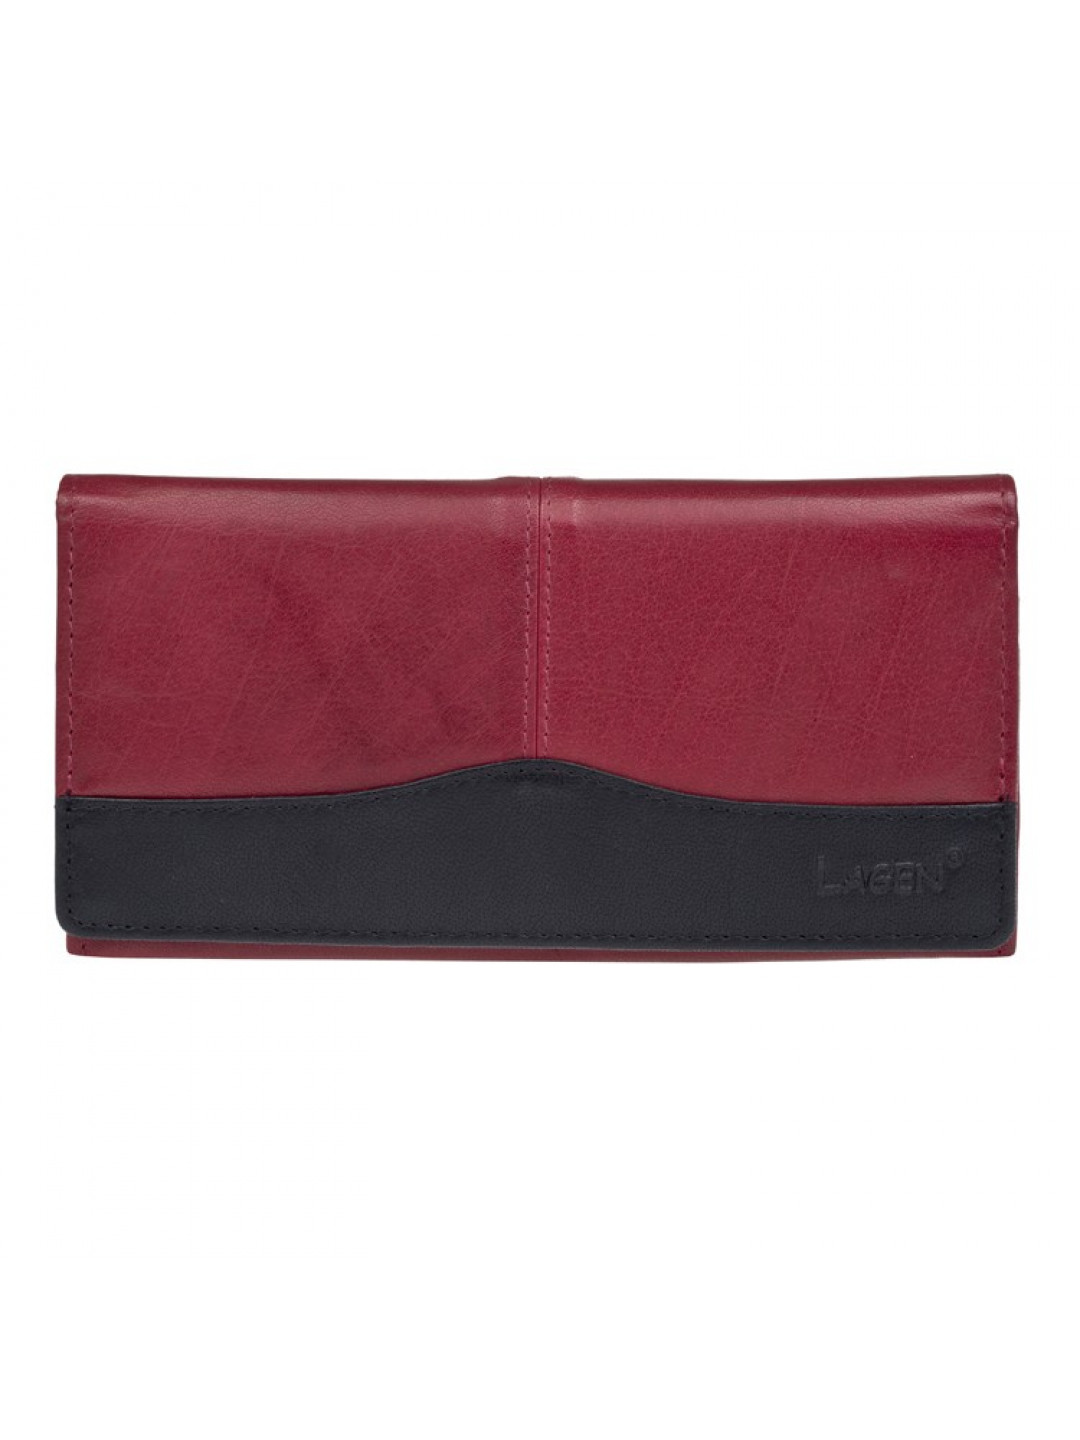 Dámská kožená peněženka Lagen Veronica – červeno-černá